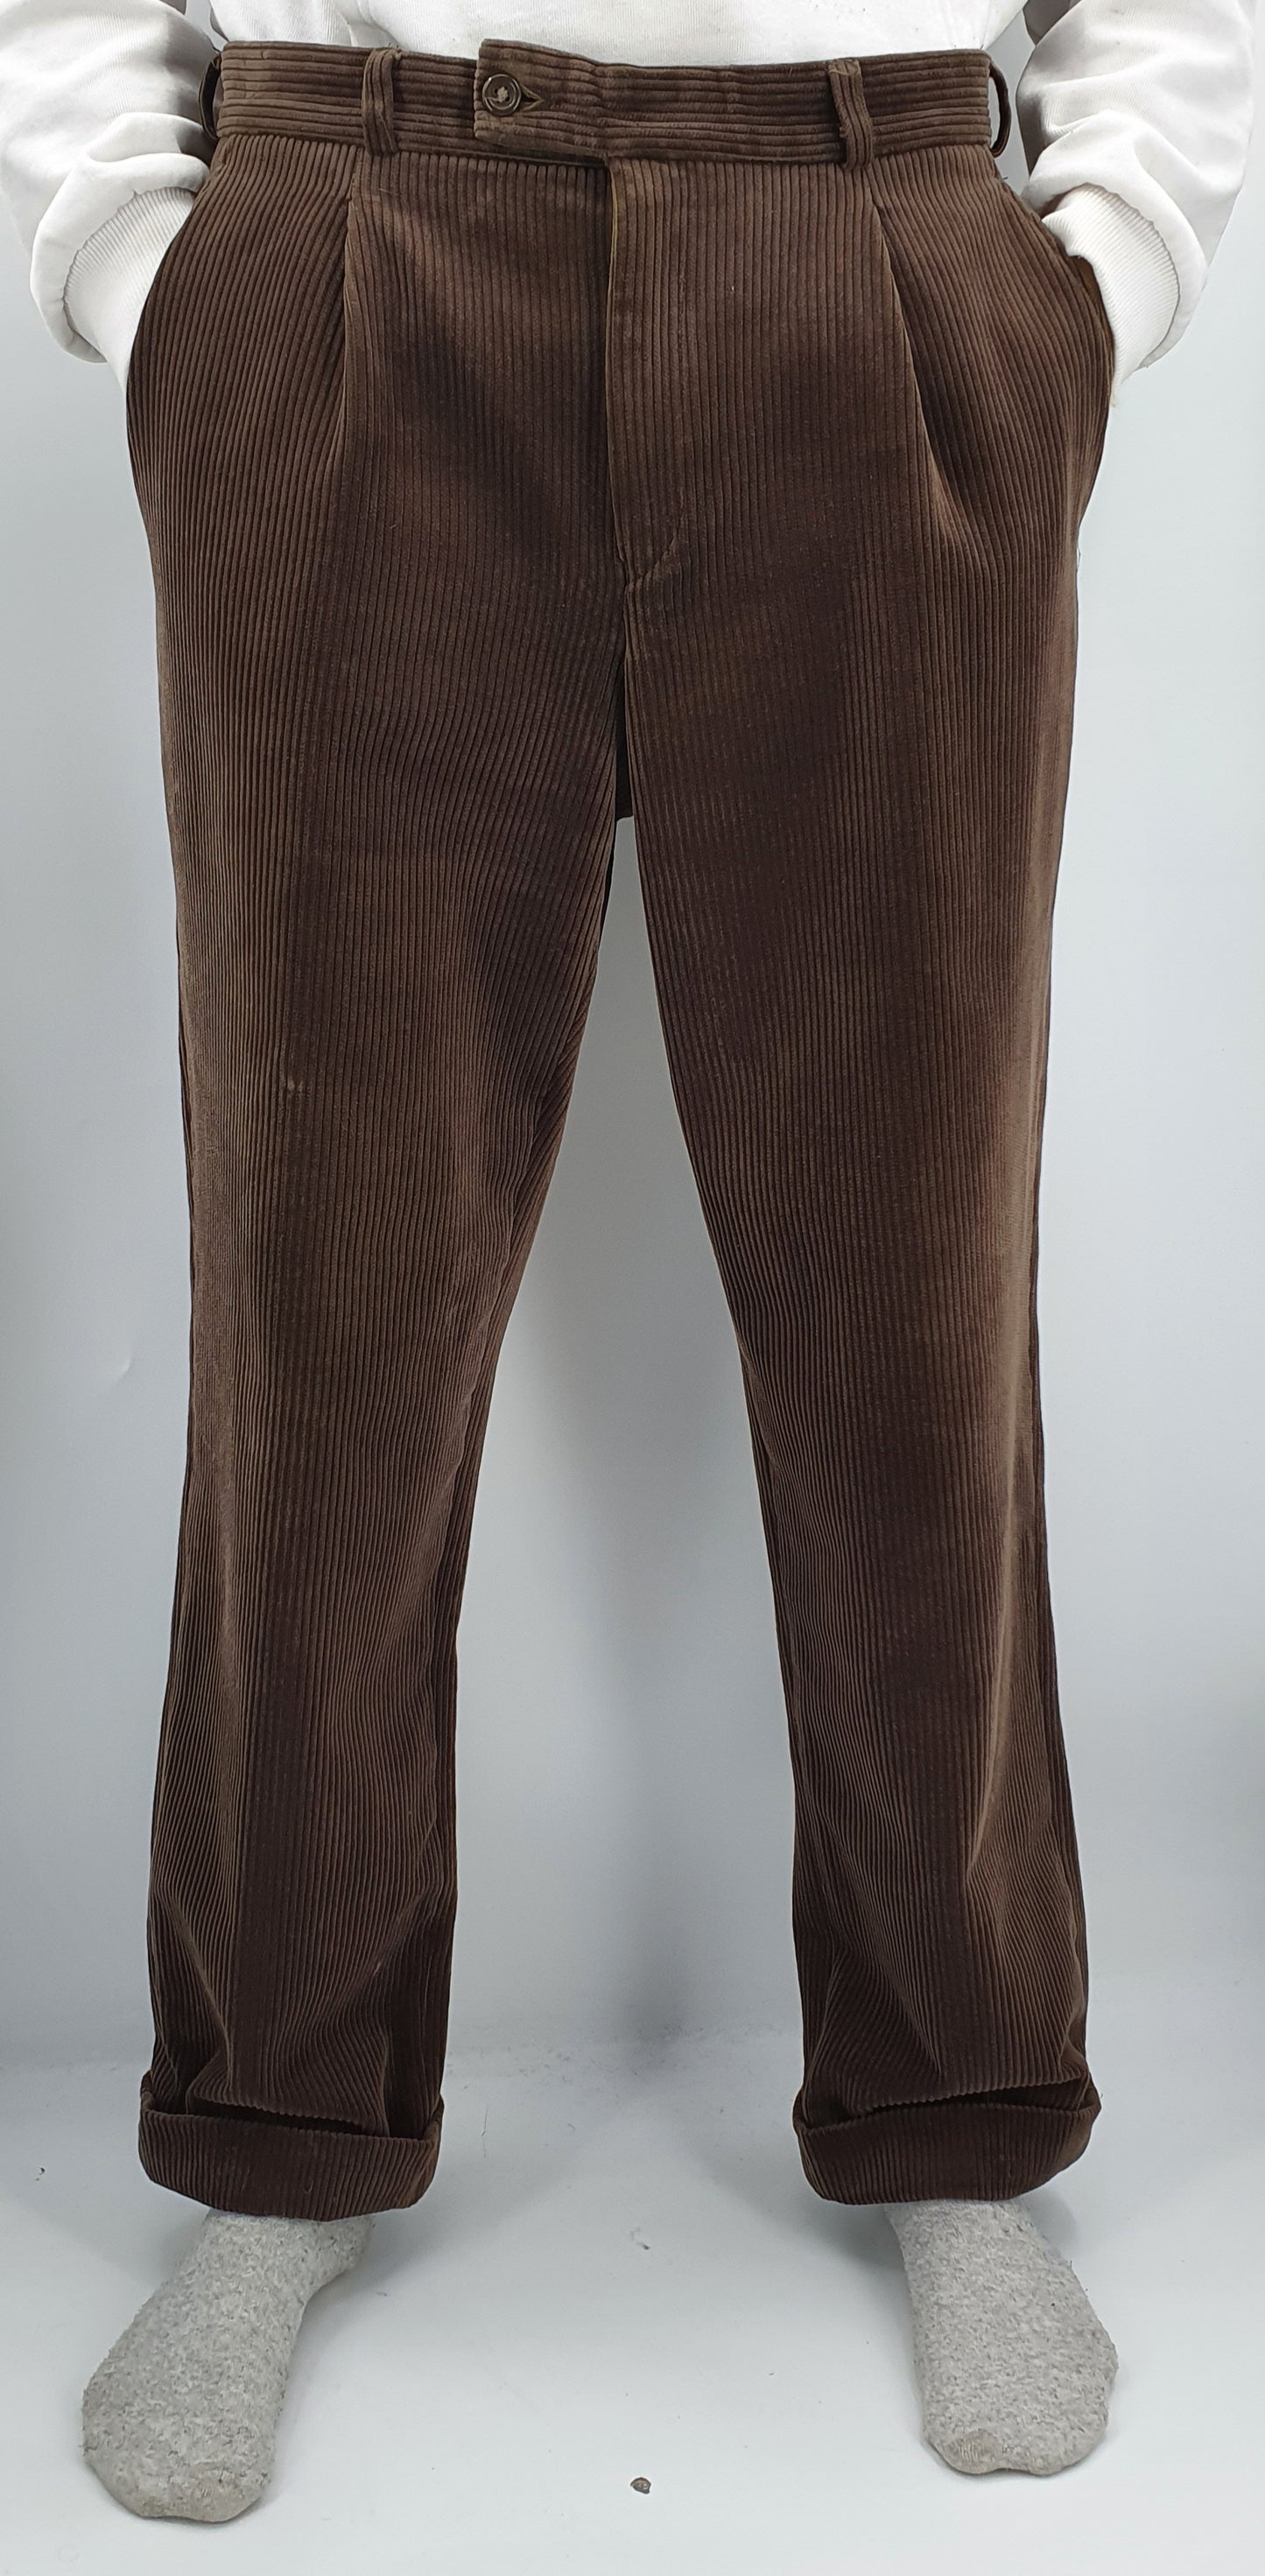 Buzo, miesten ruskeat vakosamettihousut, 80-90-luku, vyöt.ymp. 84cm